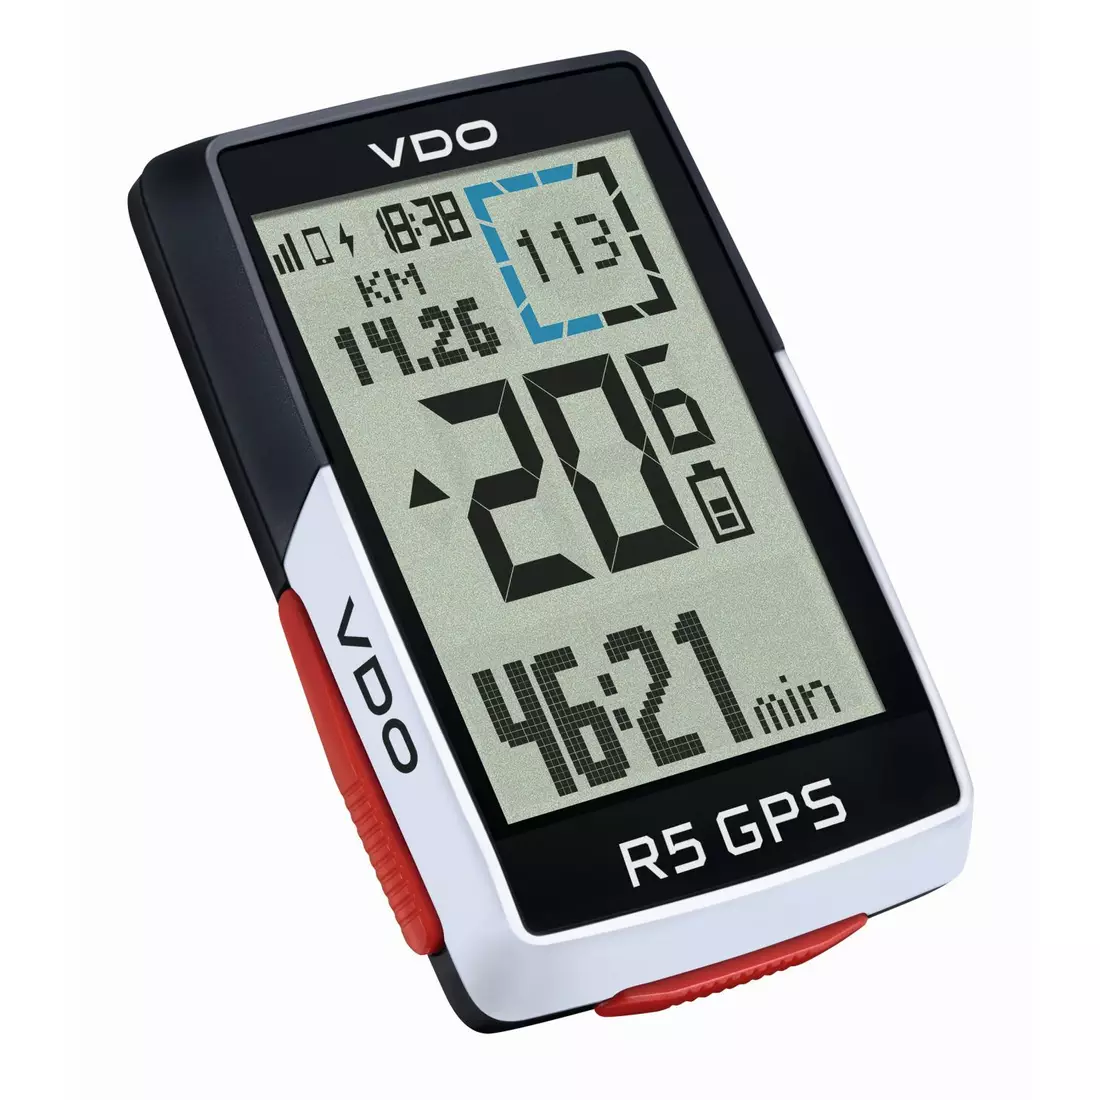 VDO R5 GPS FULL SET vezeték nélküli kerékpáros számítógép